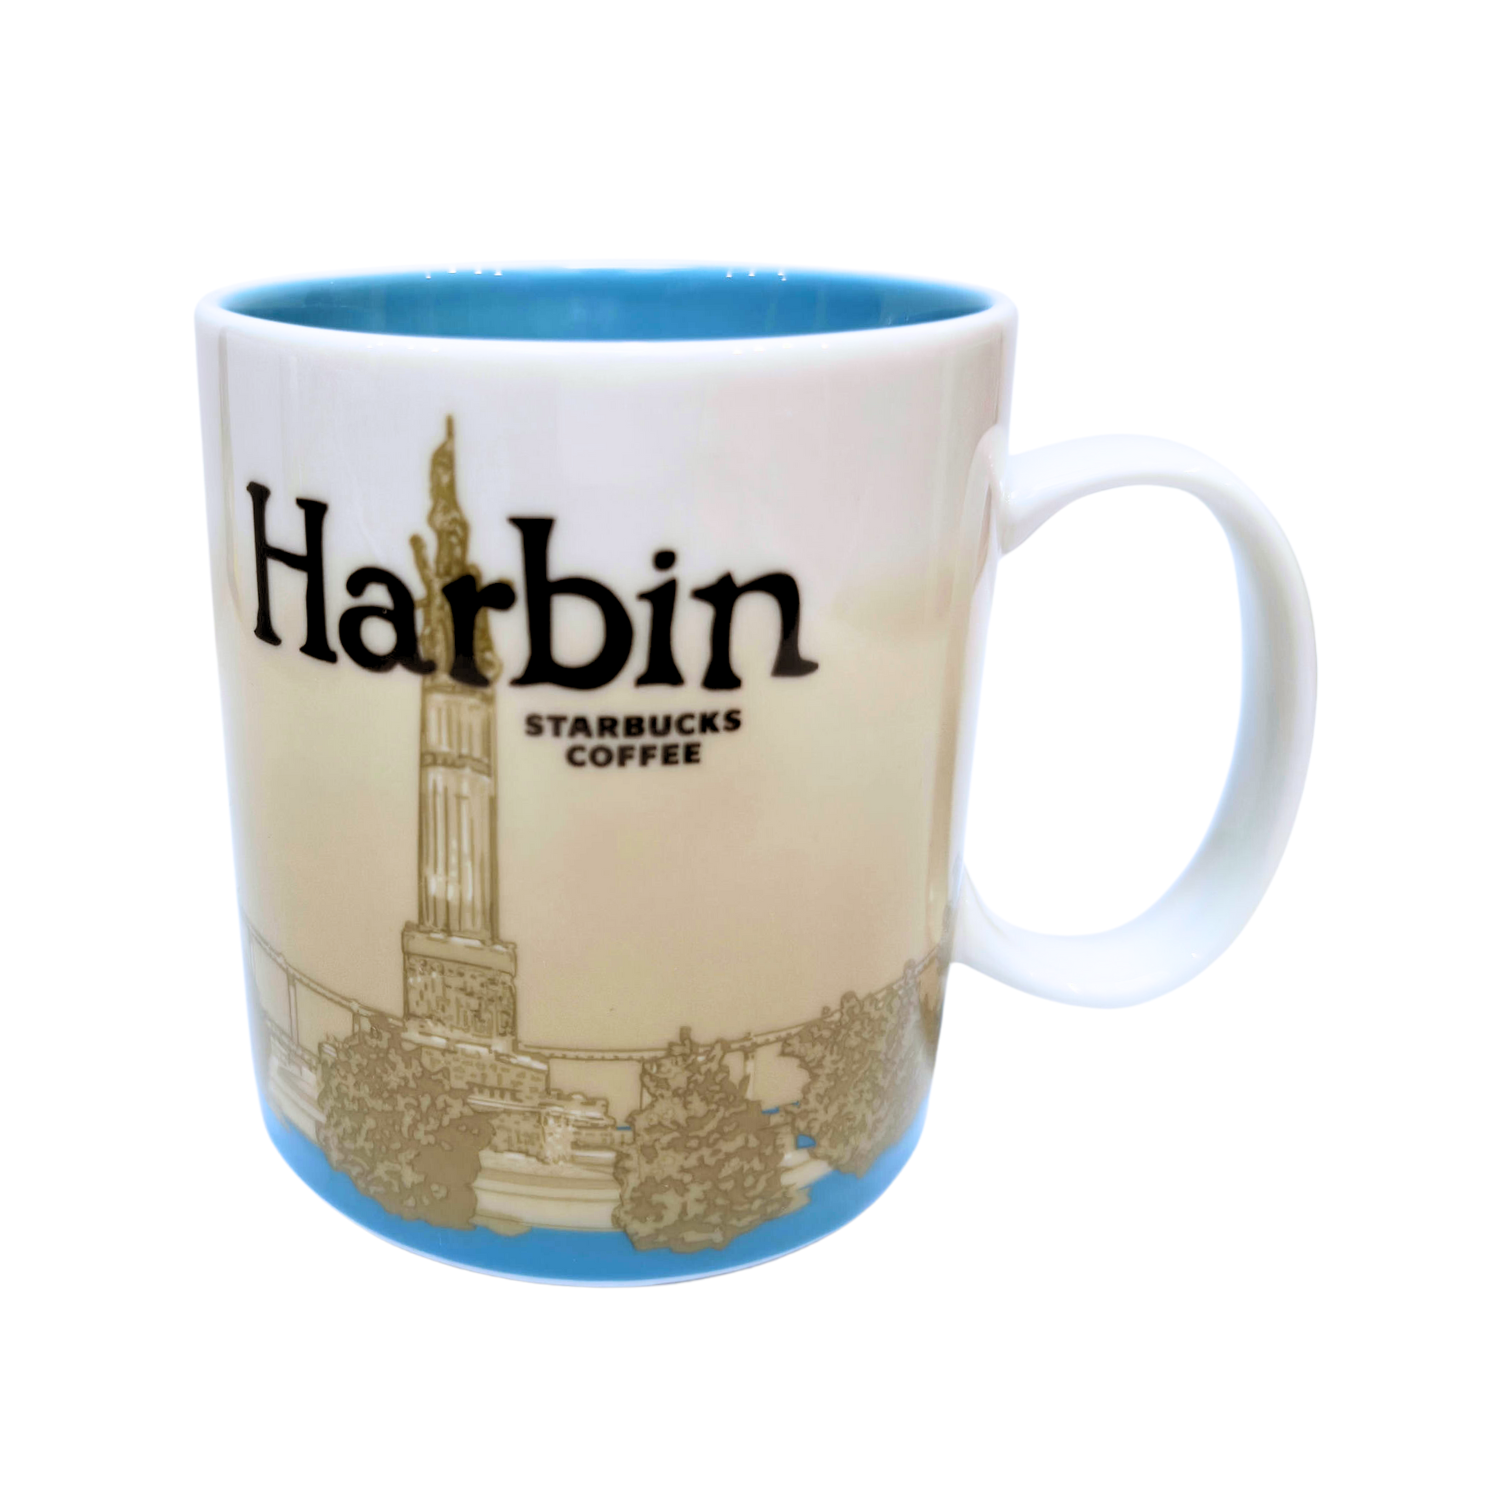 Starbucks Global Icon Series Harbin Ceramic Mug, 16 Oz